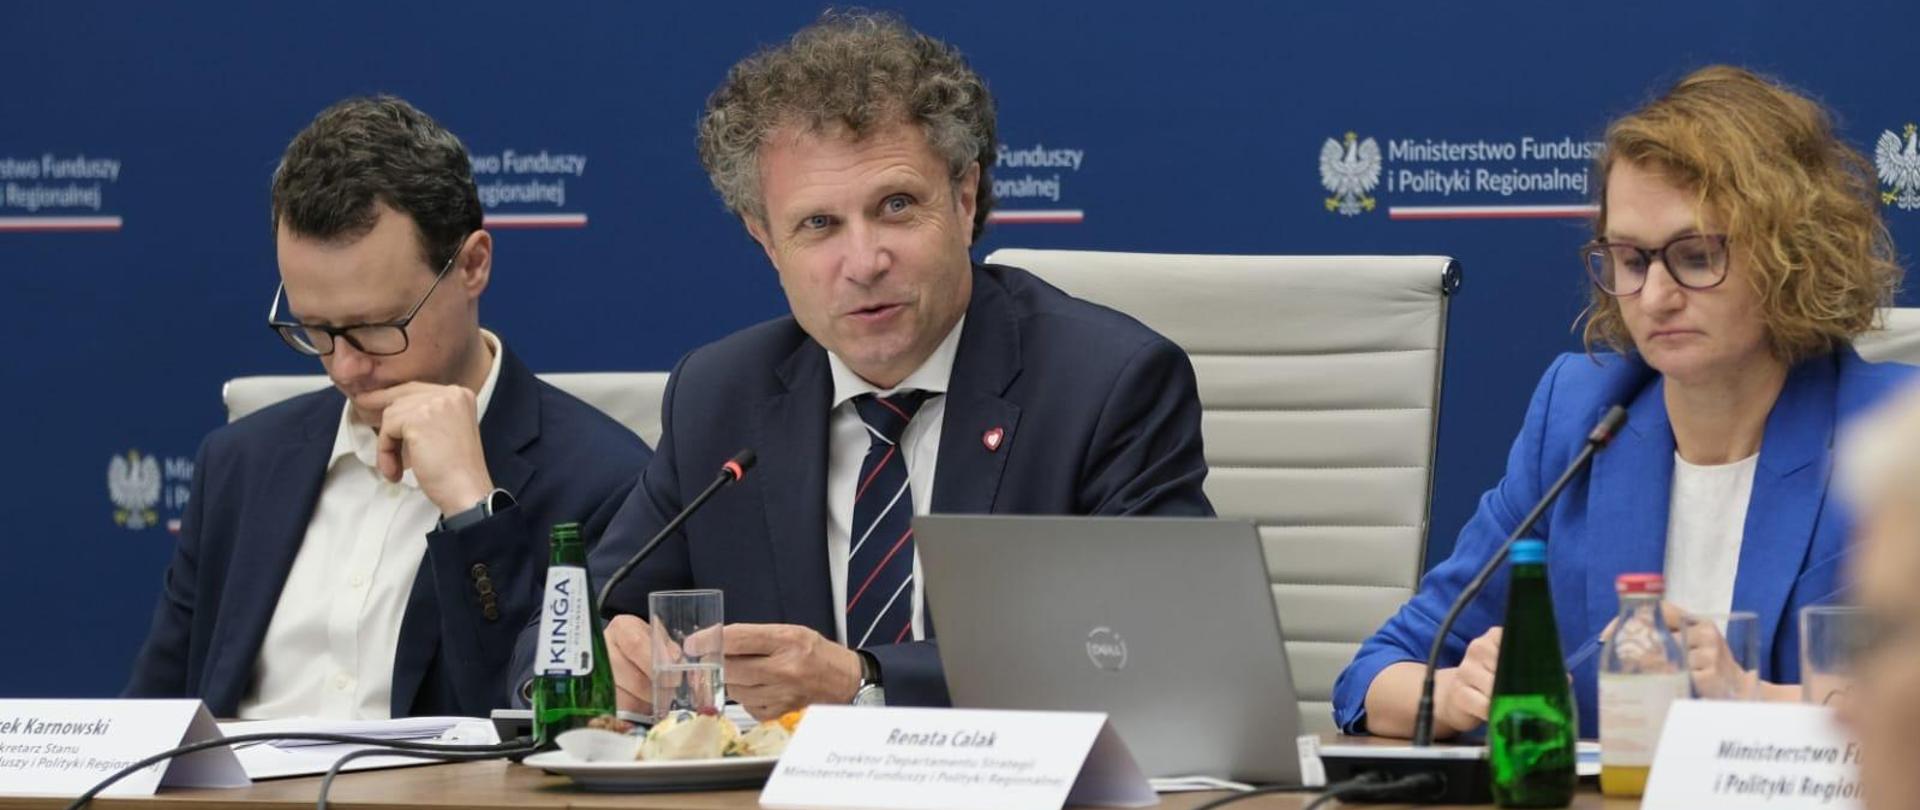 Wiceminister Jacek Karnowski siedzi przy stole w środku między dwiema innymi osobami.